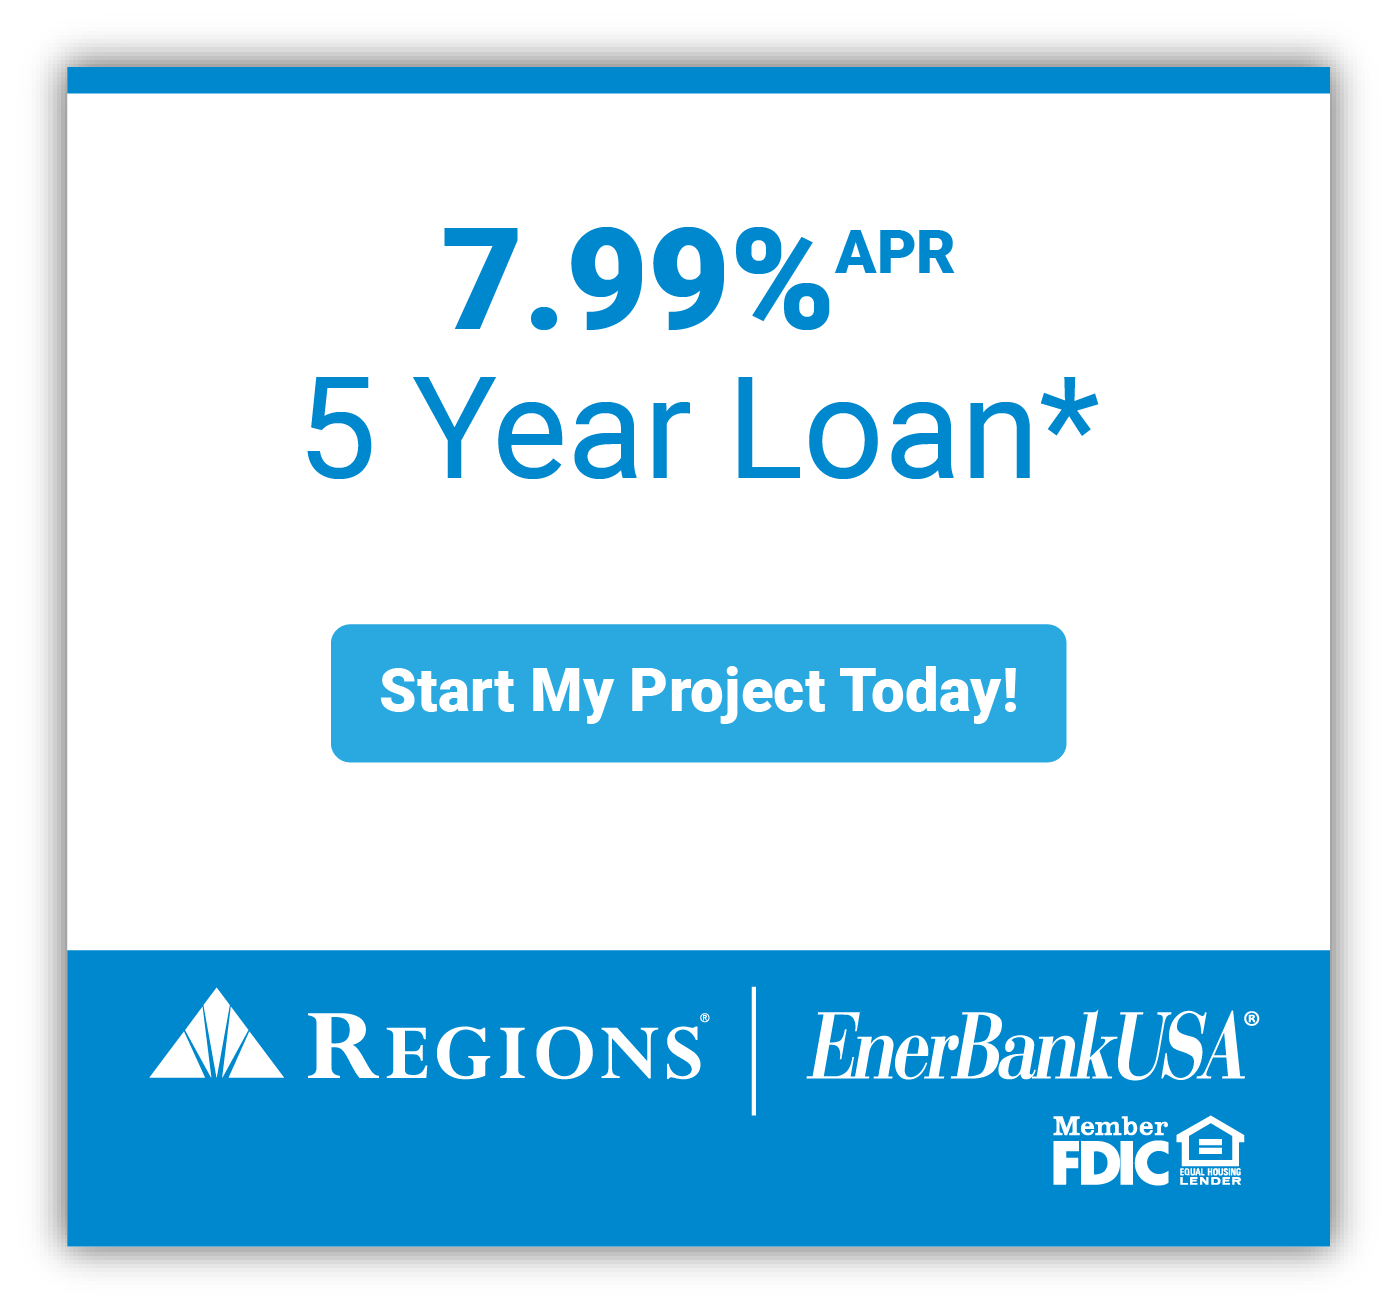 7.99% APR 5-Year Loan